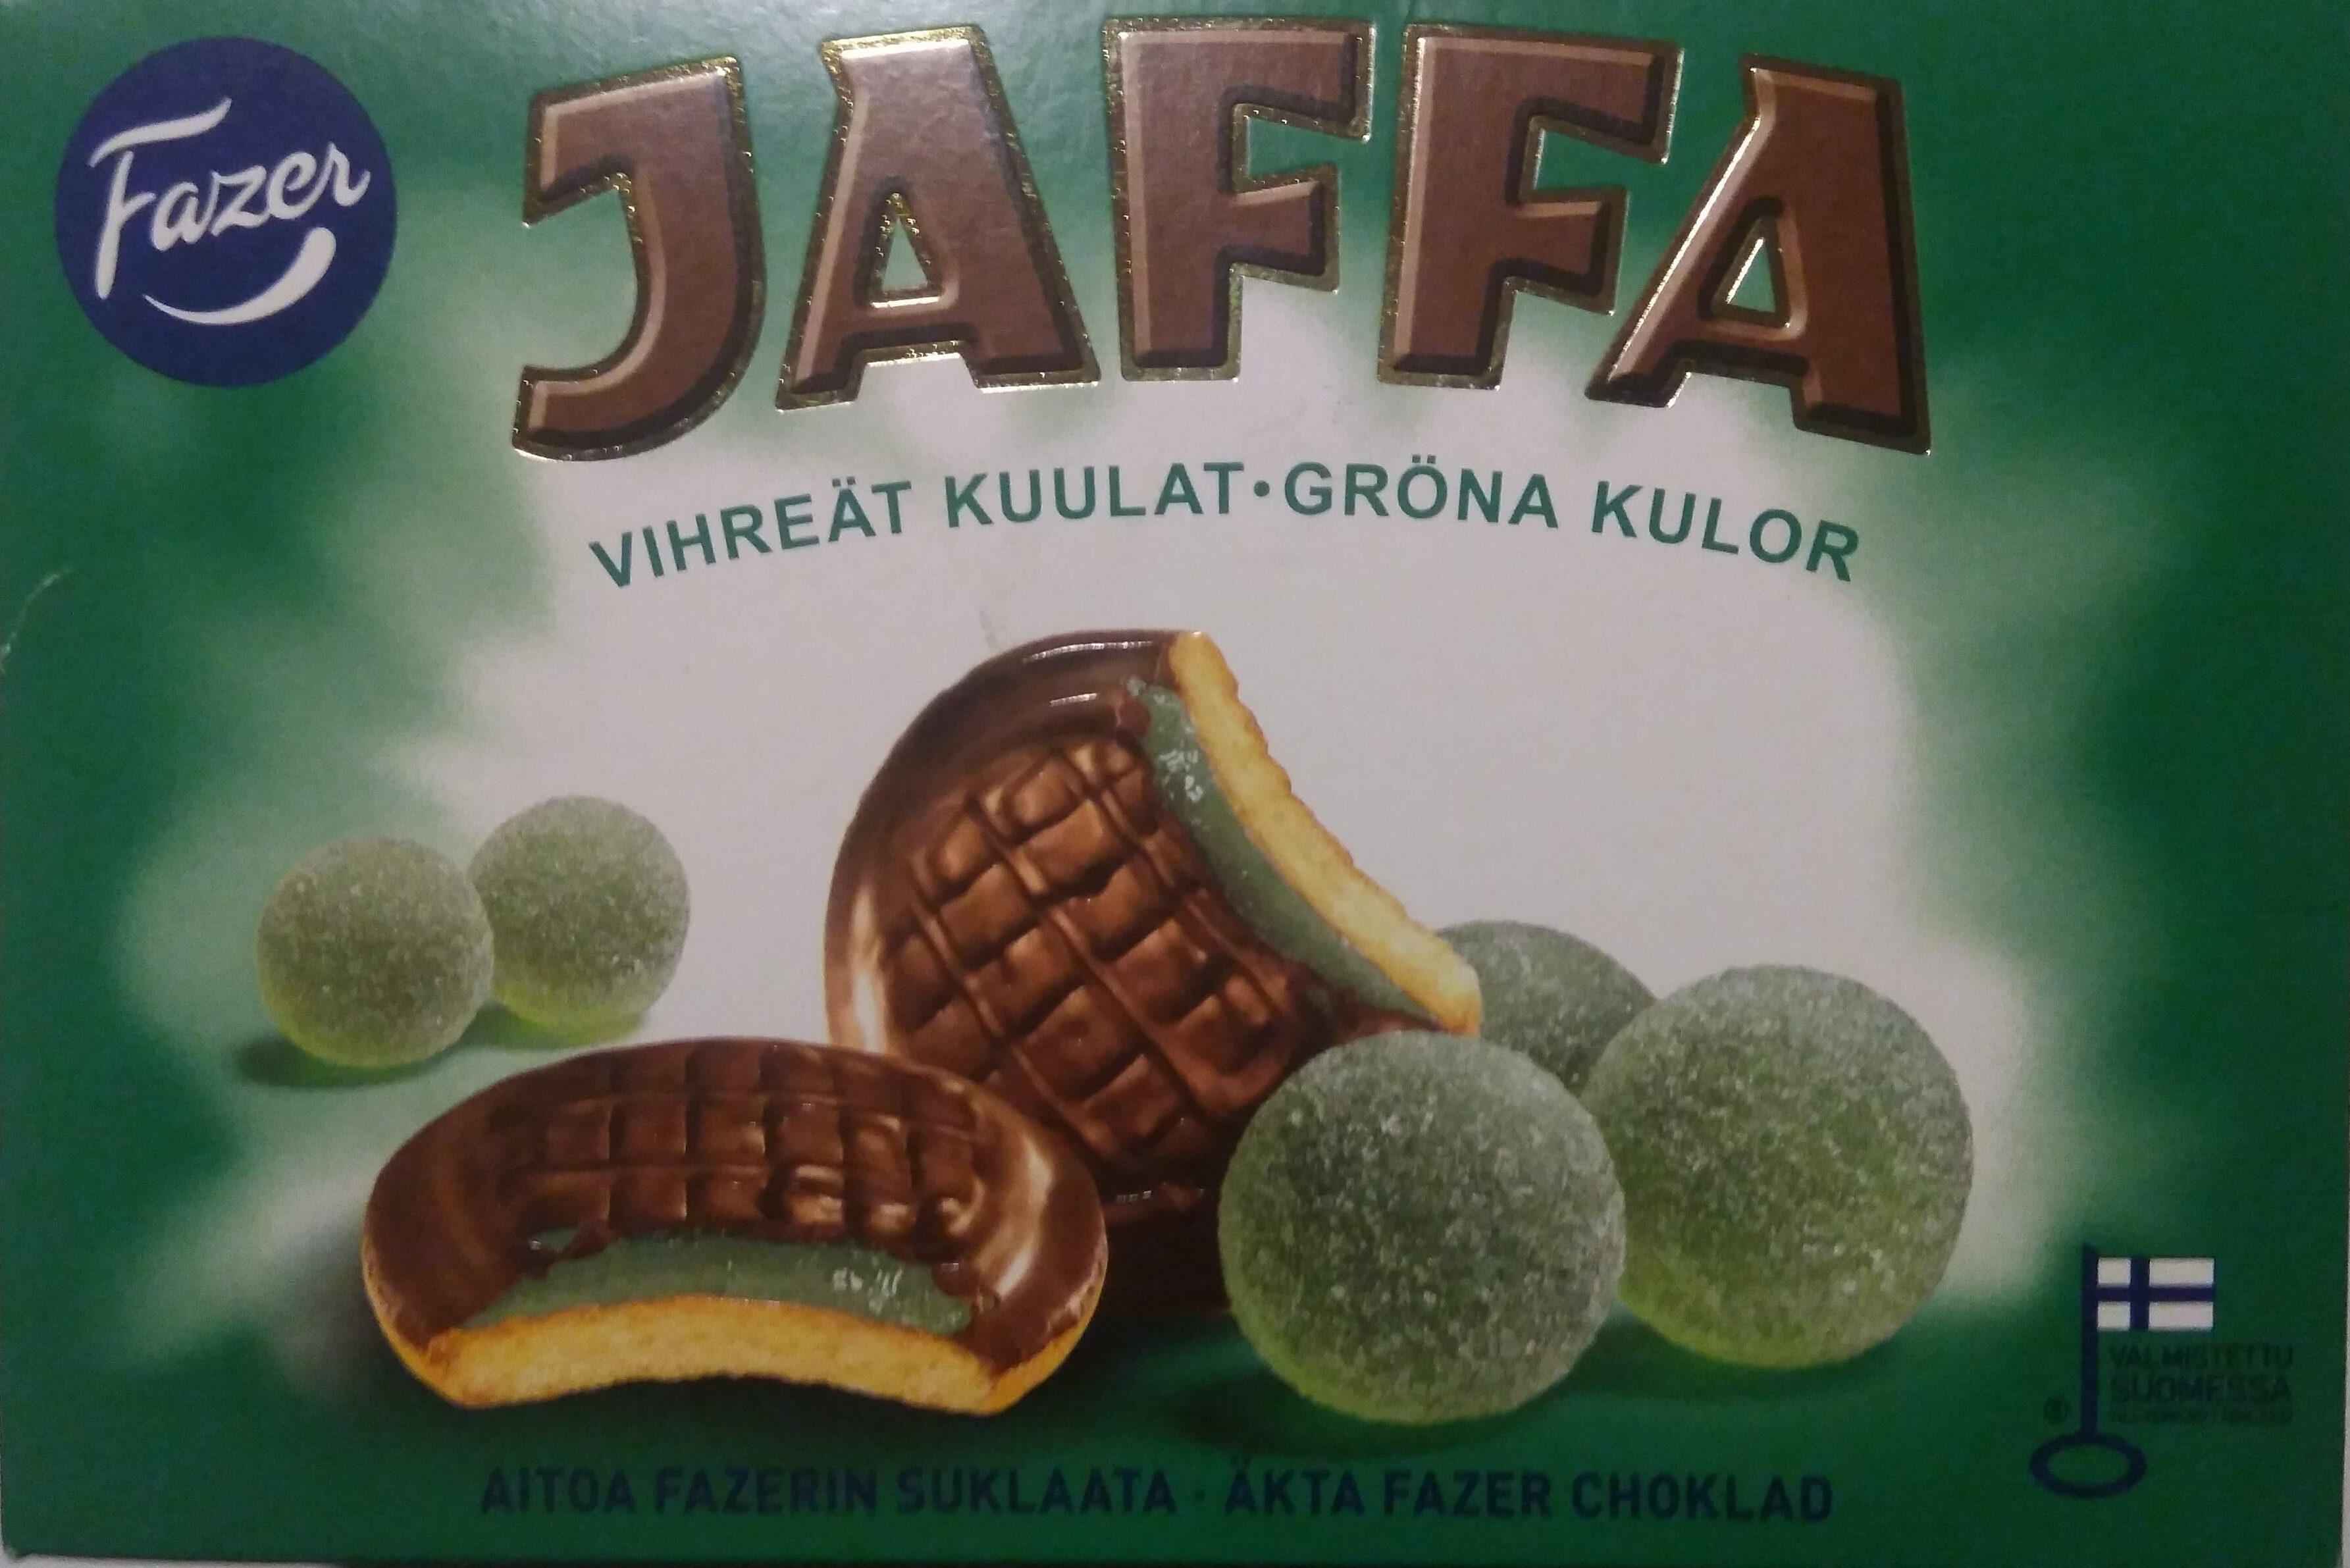 Jaffa Vihreät Kuulat - Tuote - fi